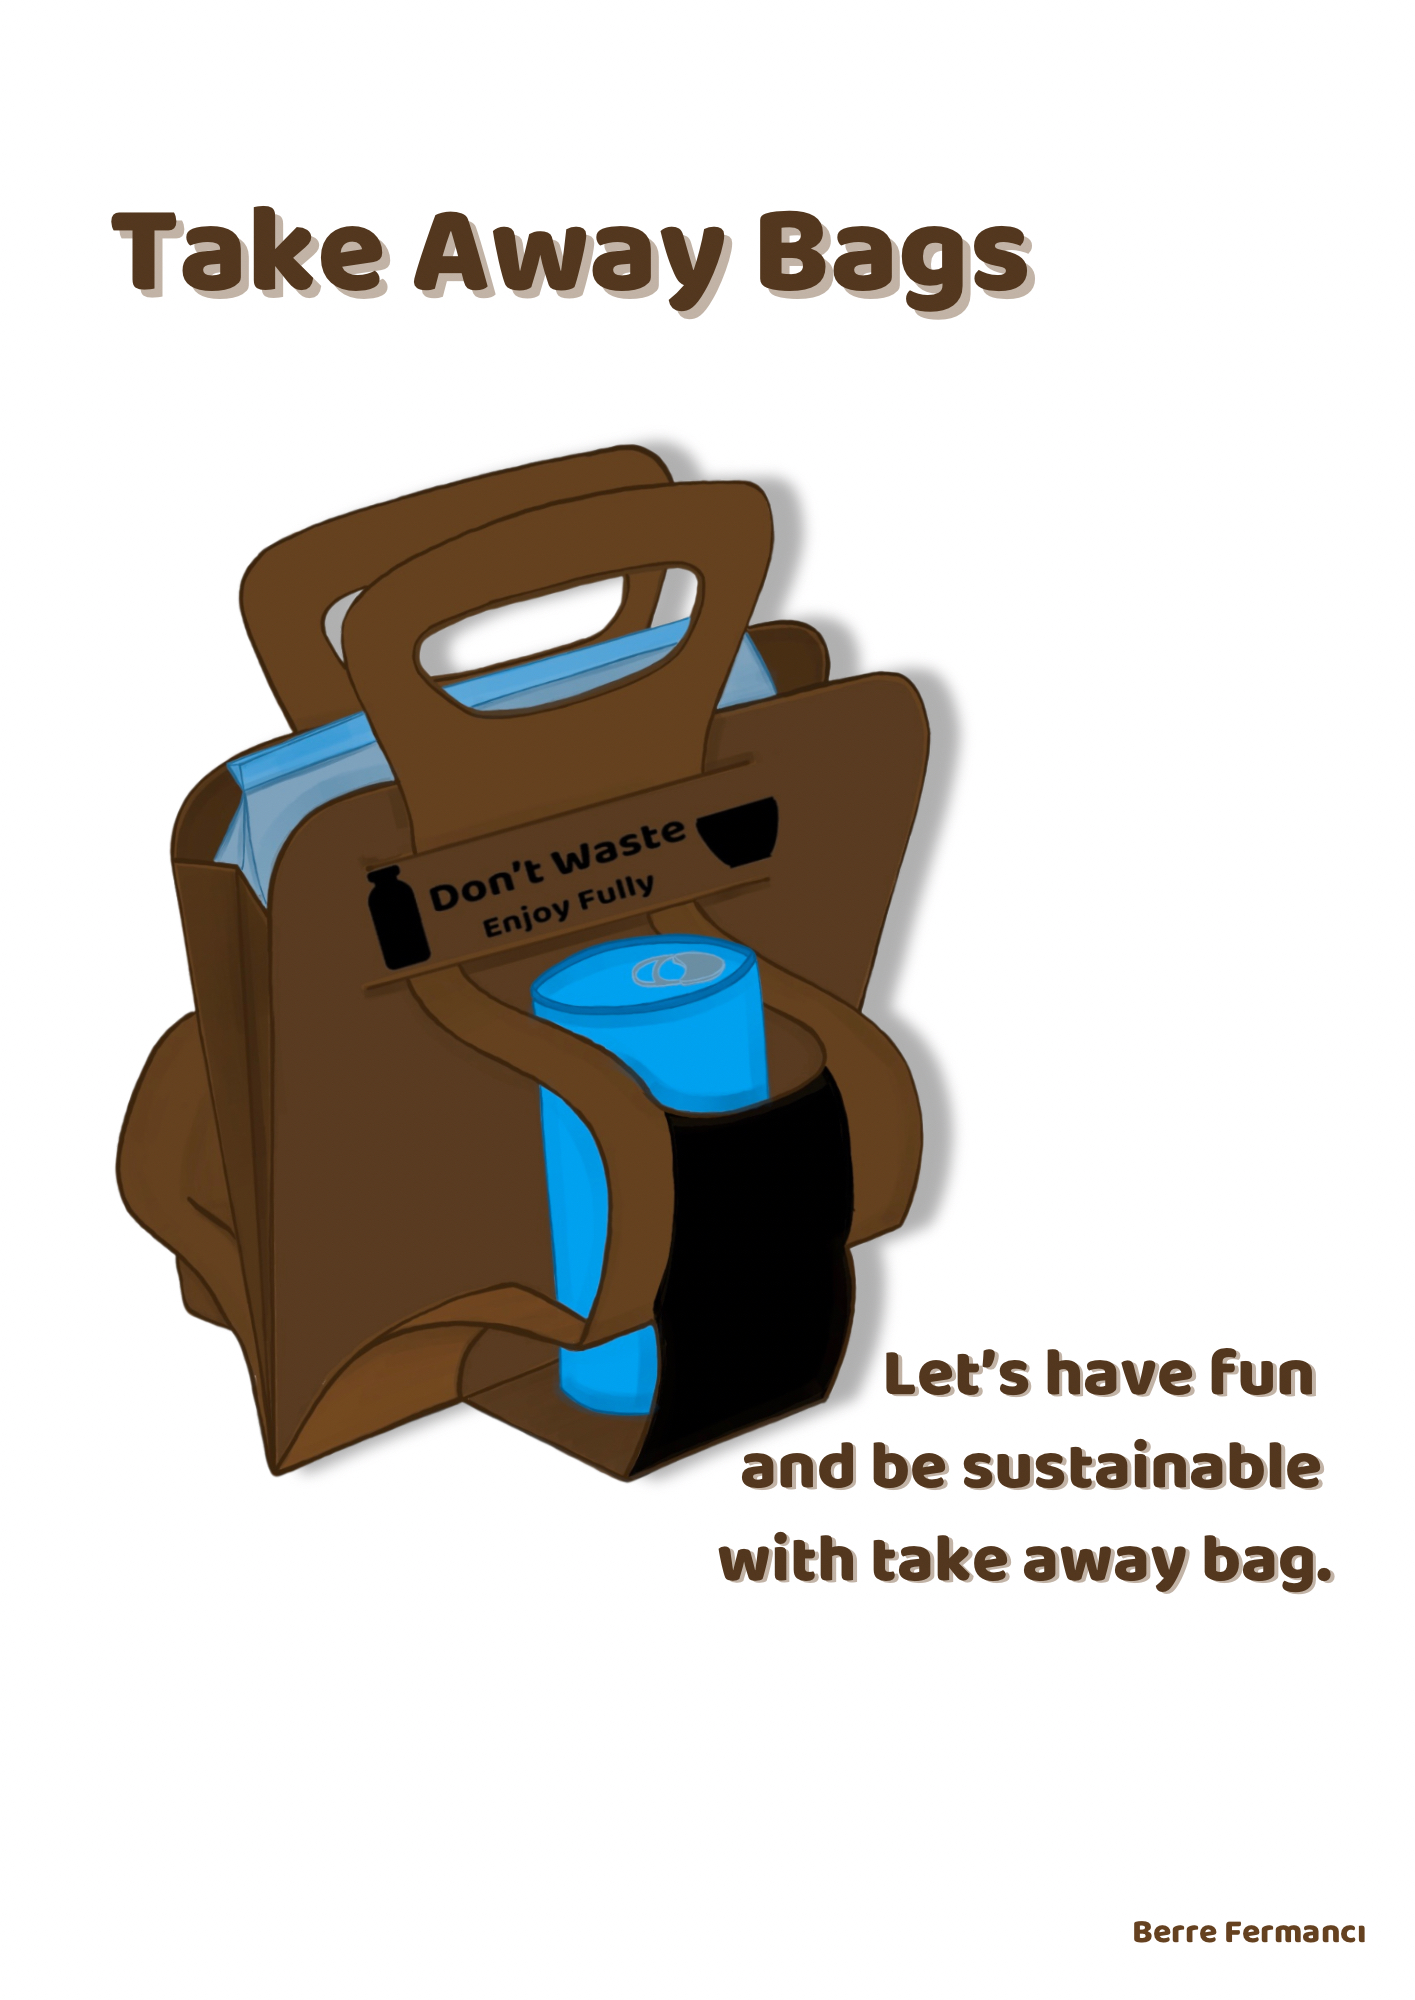 Take-Away Bag